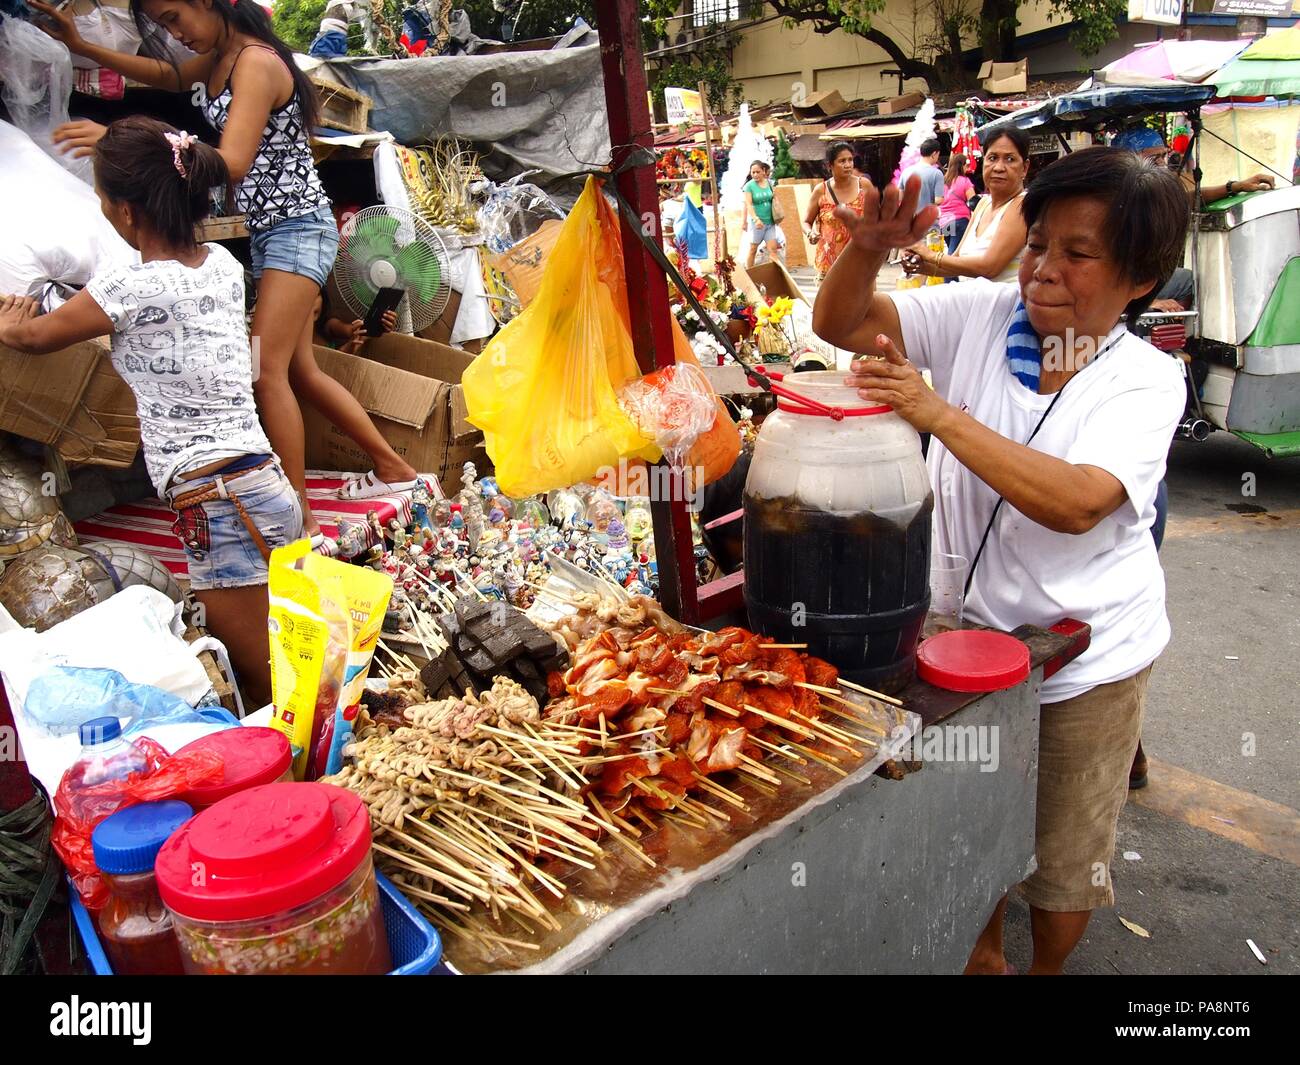 QUEZON CITY, Philippinen - 22. NOVEMBER 2015: eine Frau verkauft, kalte Säfte und eine große Auswahl an Grill auf einem Wagen auf einer Straße in Quezon City, Philippinen Stockfoto